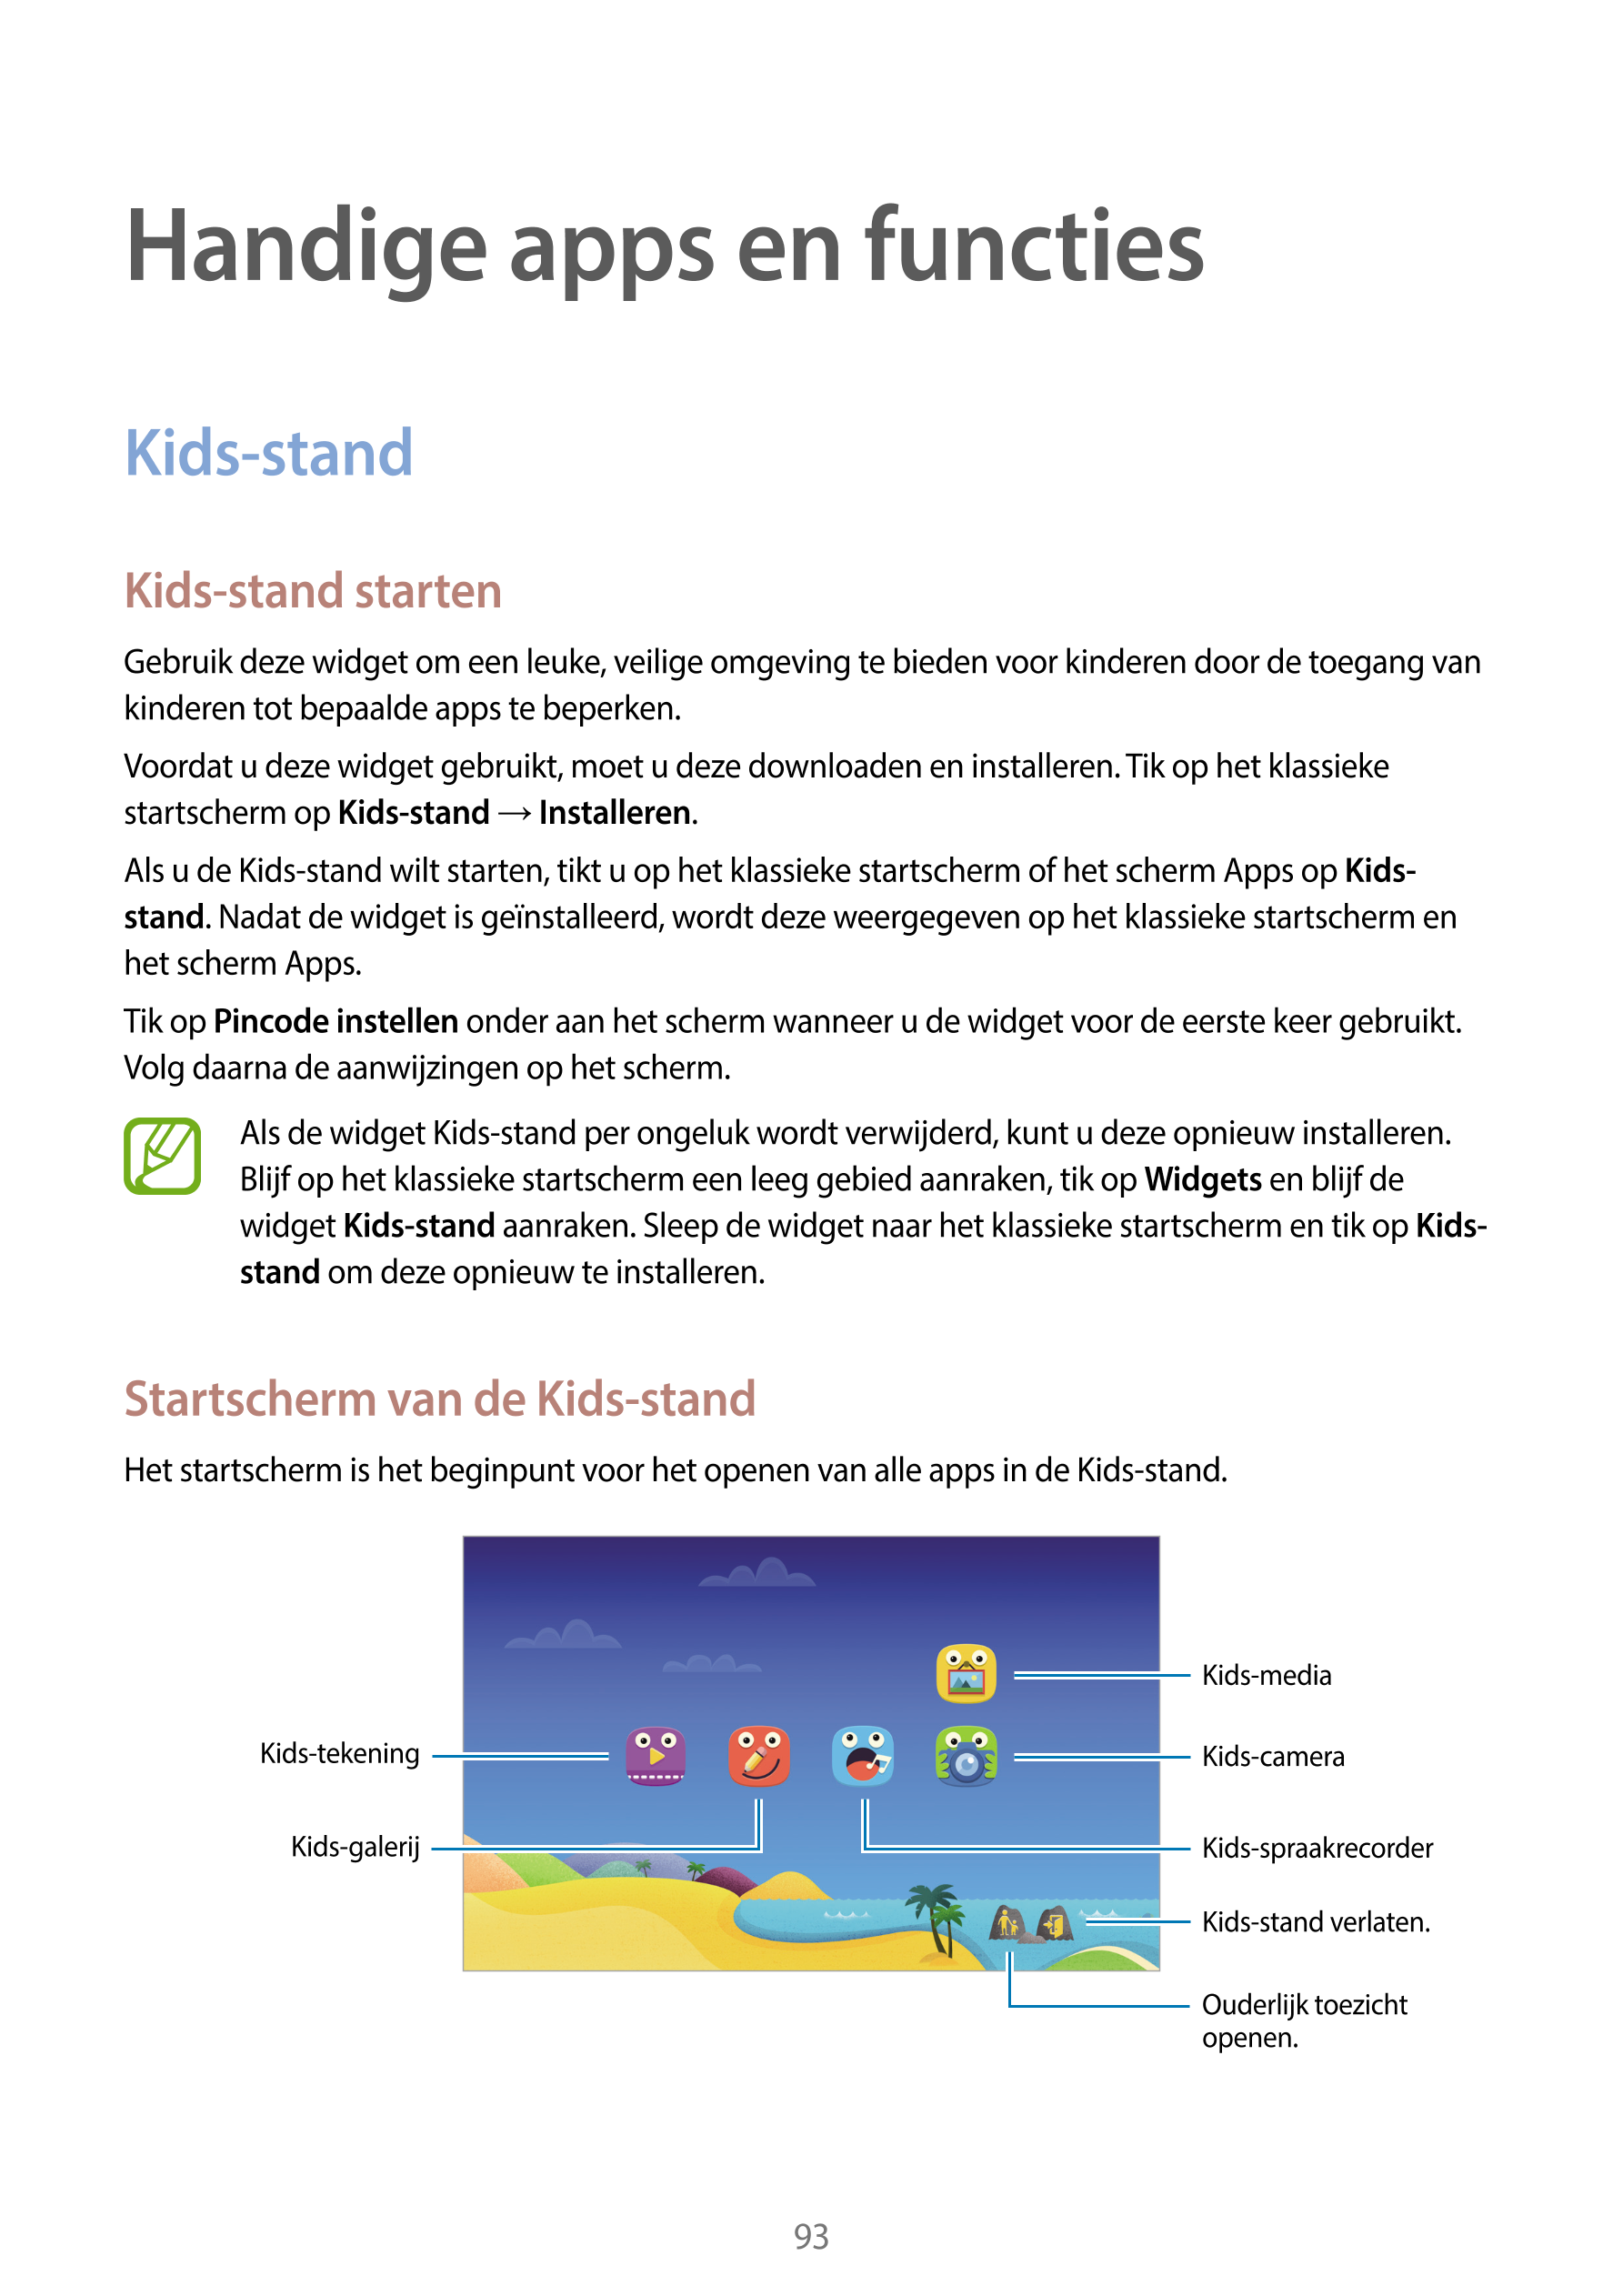 Handige apps en functies
Kids-stand
Kids-stand starten
Gebruik deze widget om een leuke, veilige omgeving te bieden voor kindere